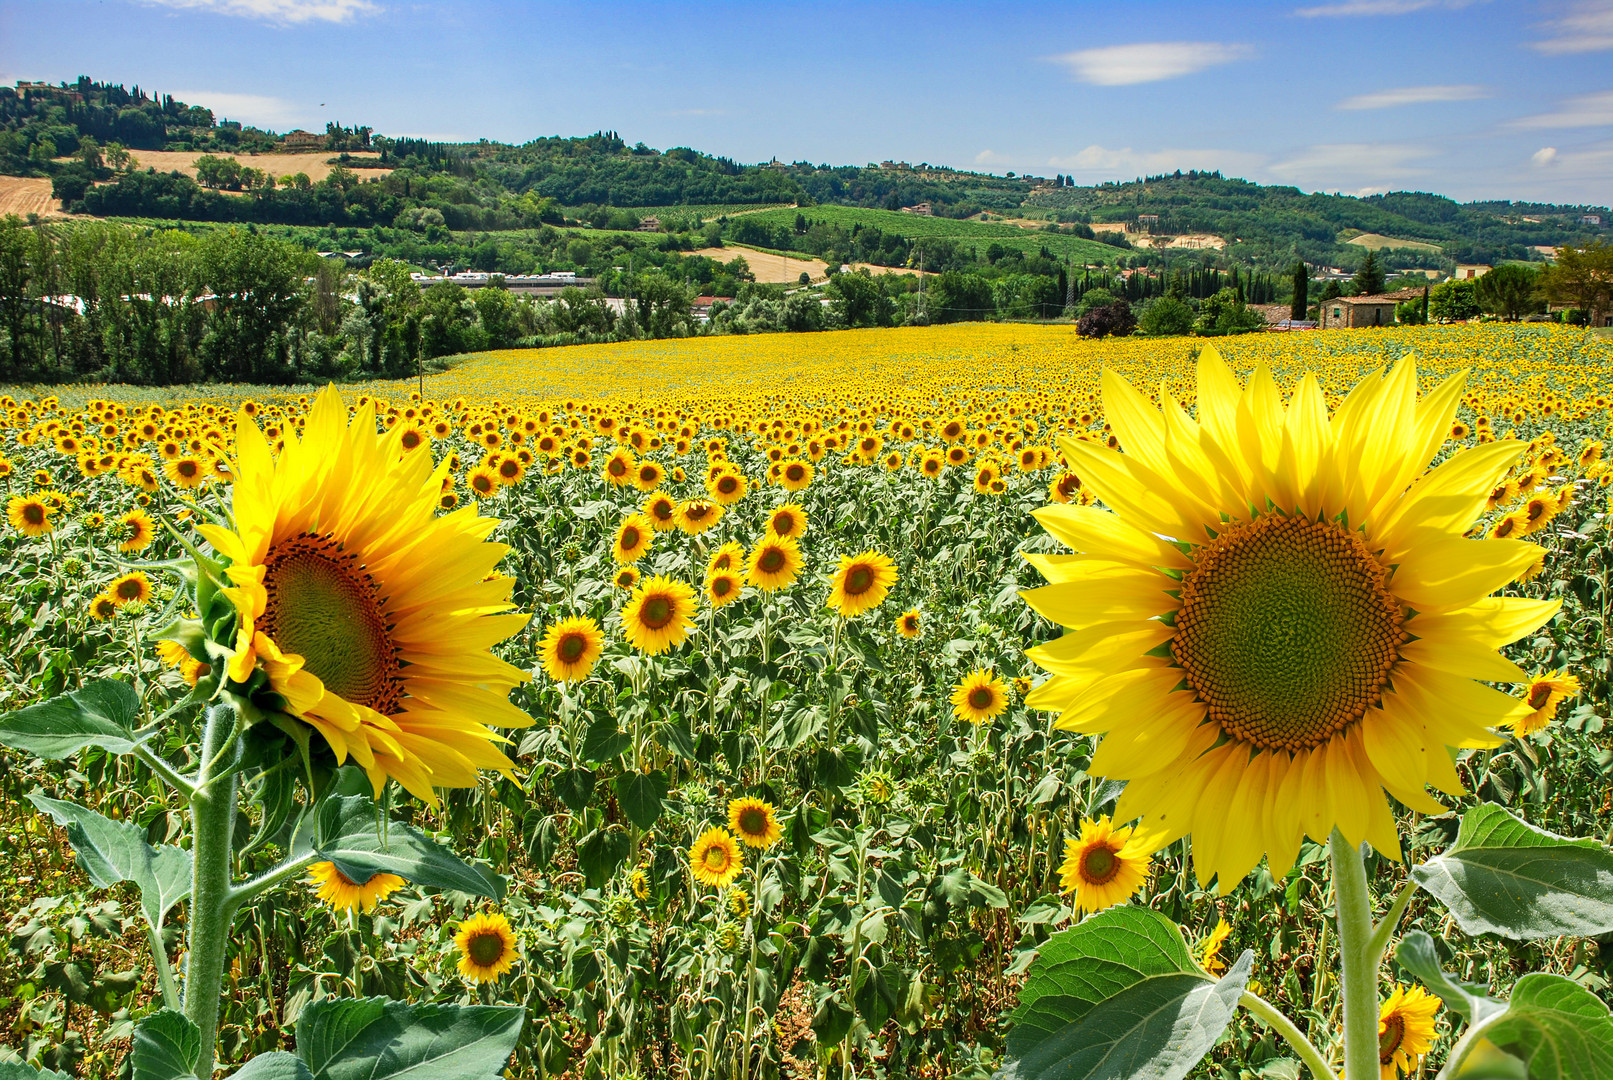 Sonnenblumen in der Toscana